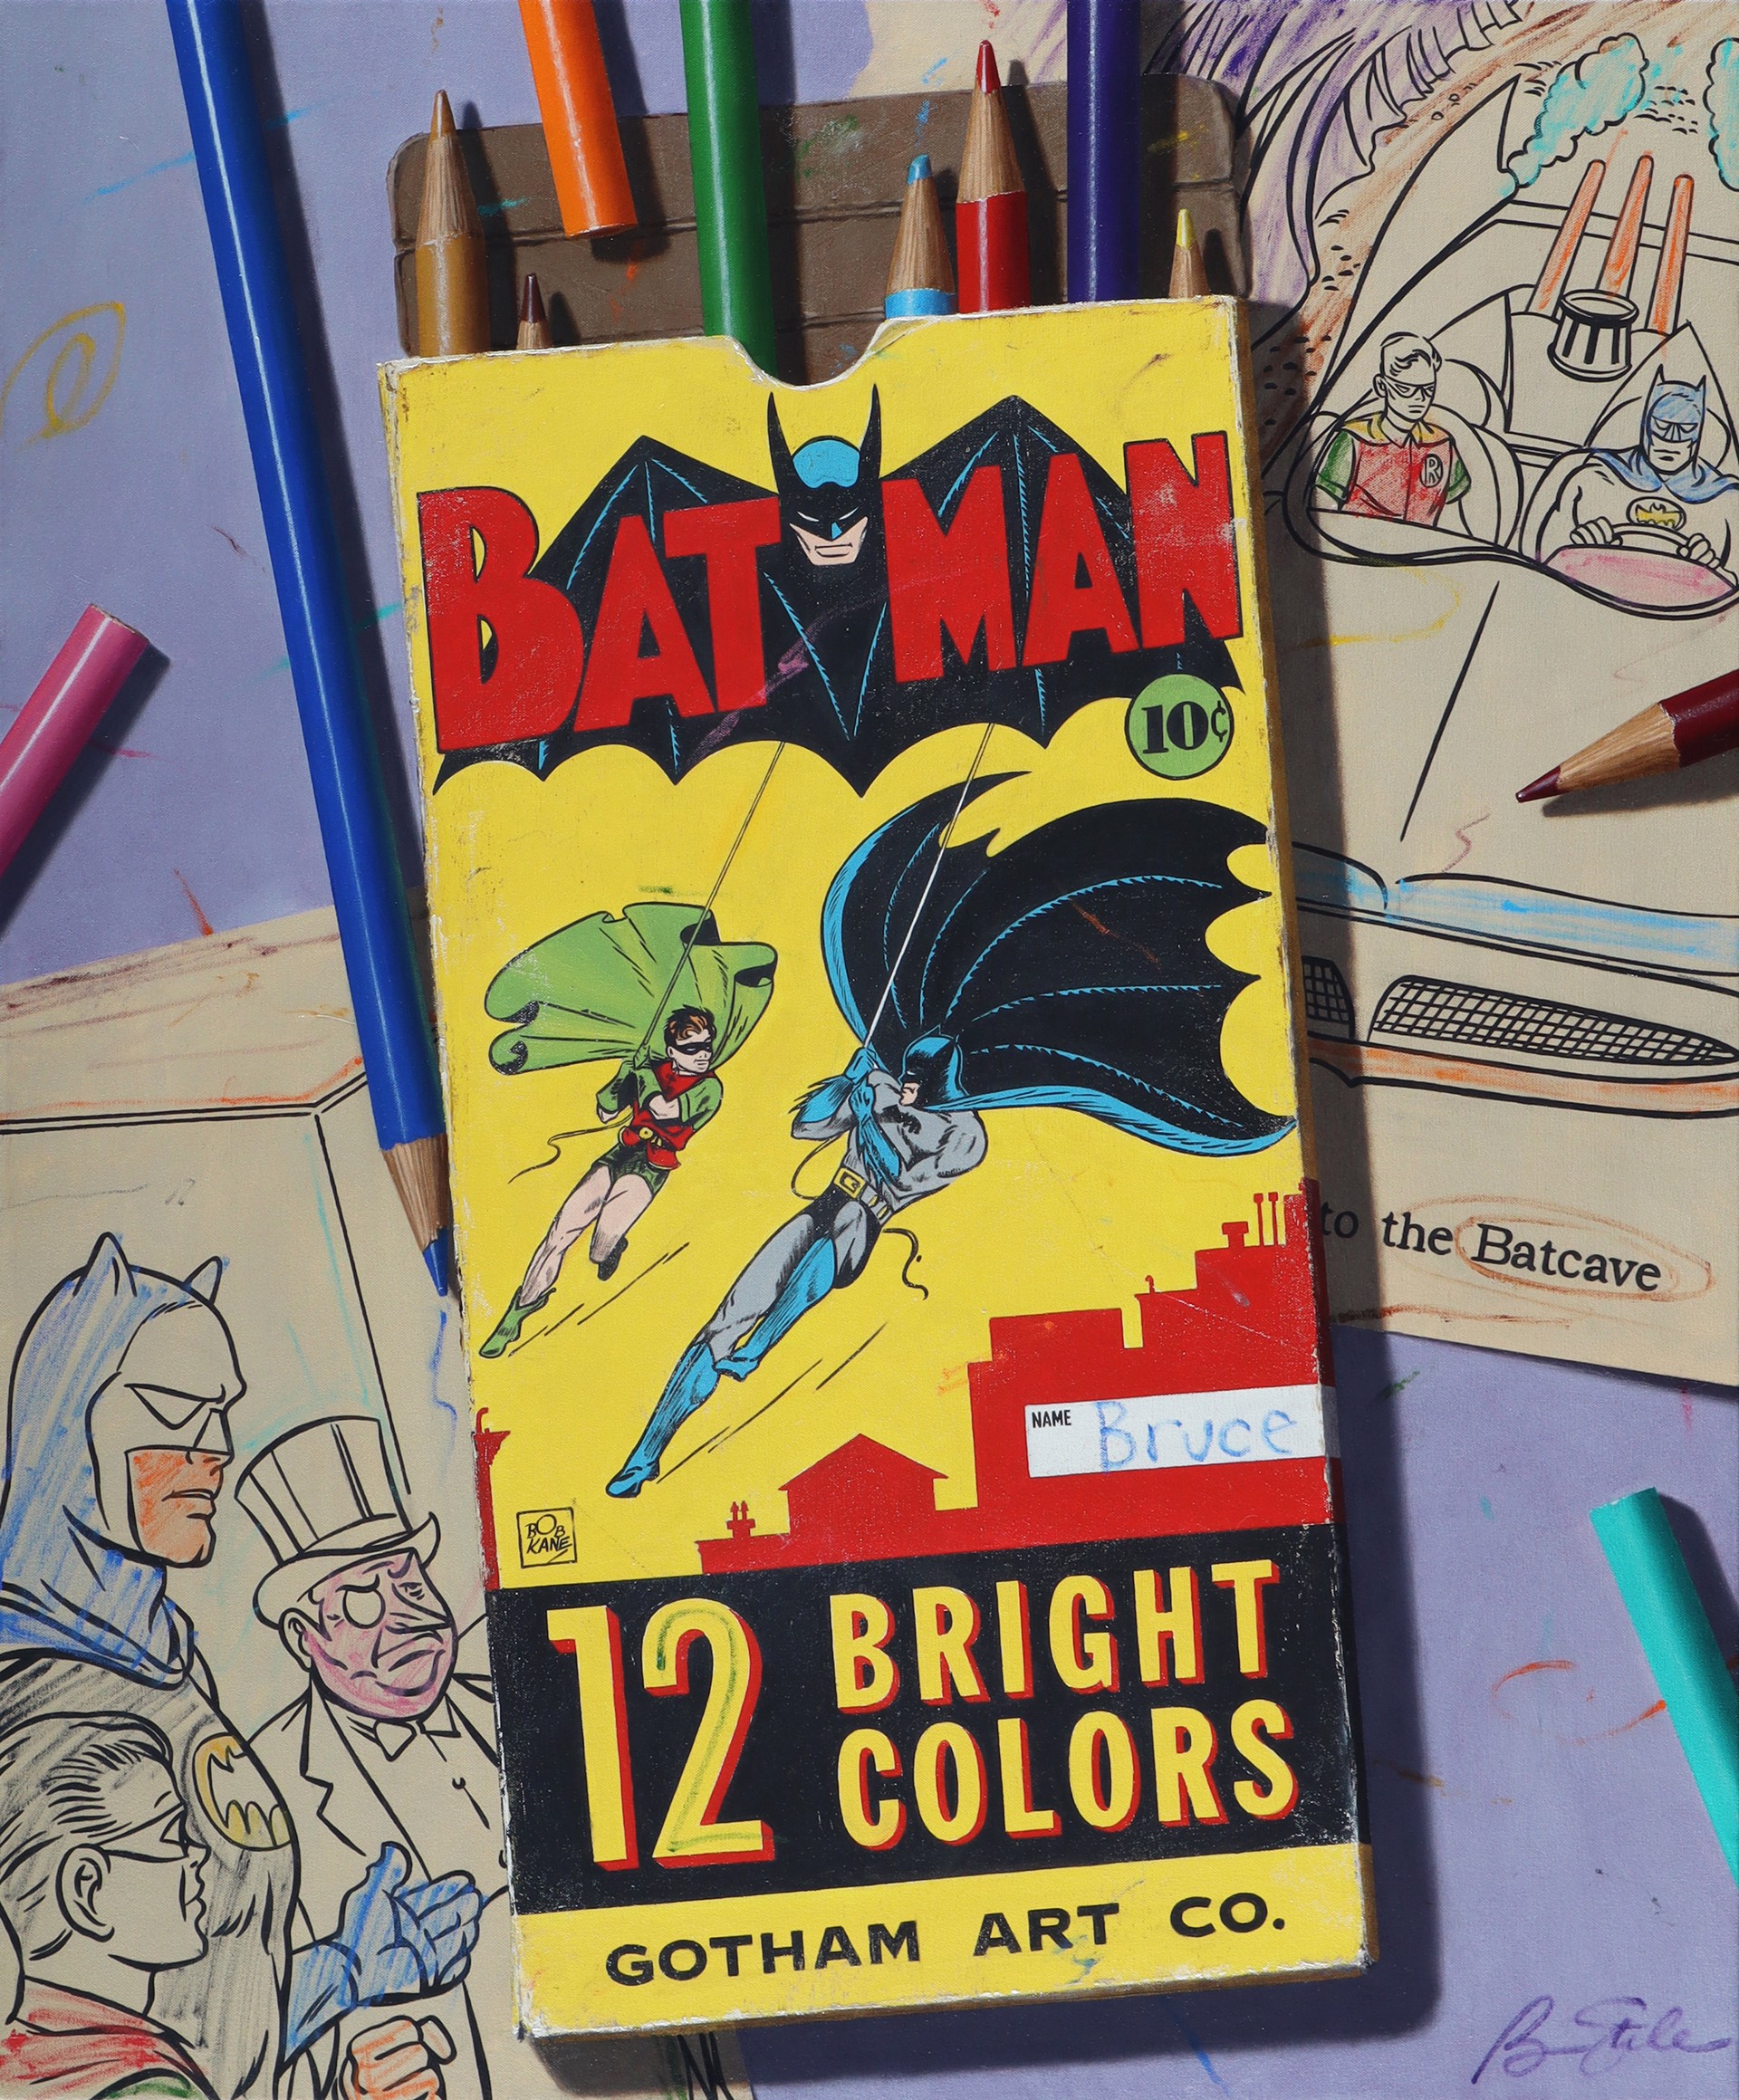 Gotham Art Co. by Ben Steele